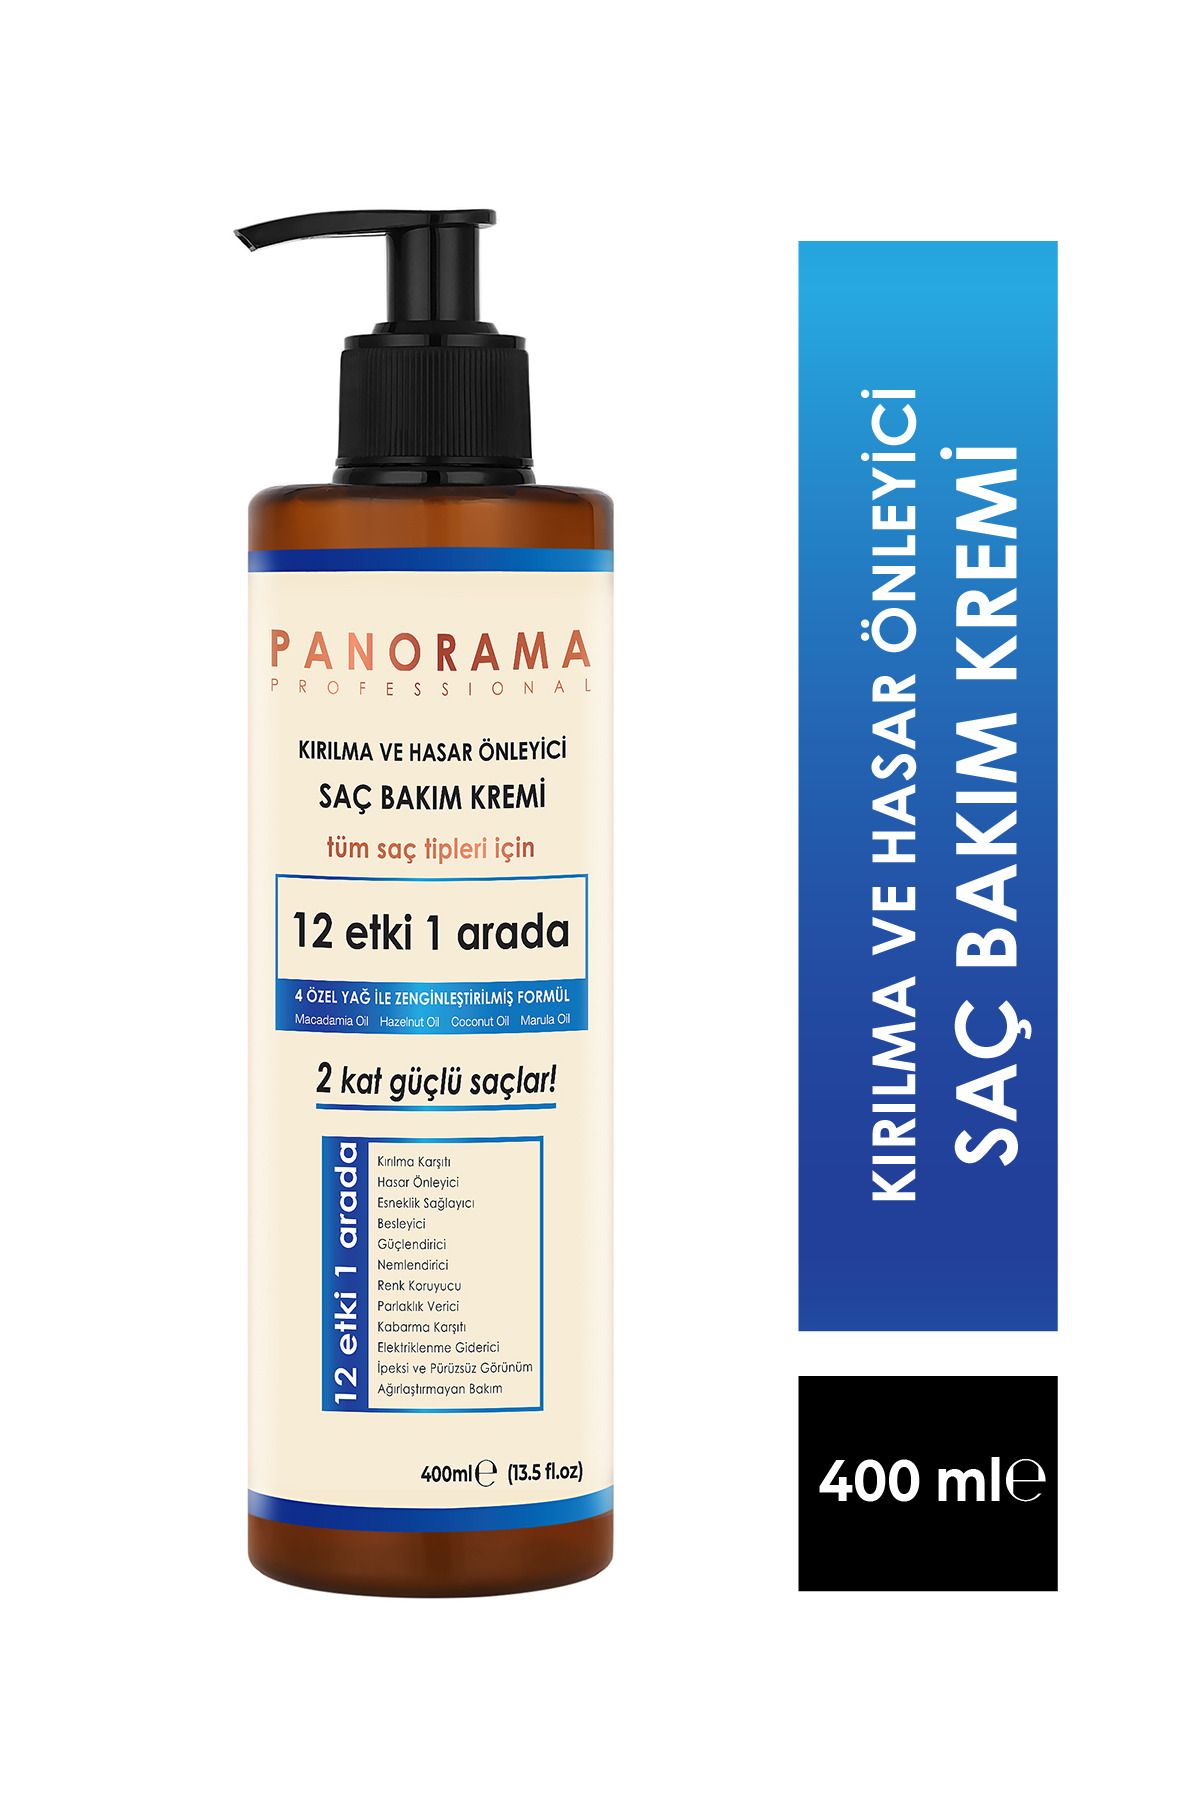 PANORAMA Professional Kırılma ve Hasar Önleyici Saç Bakım Kremi- 400 ml